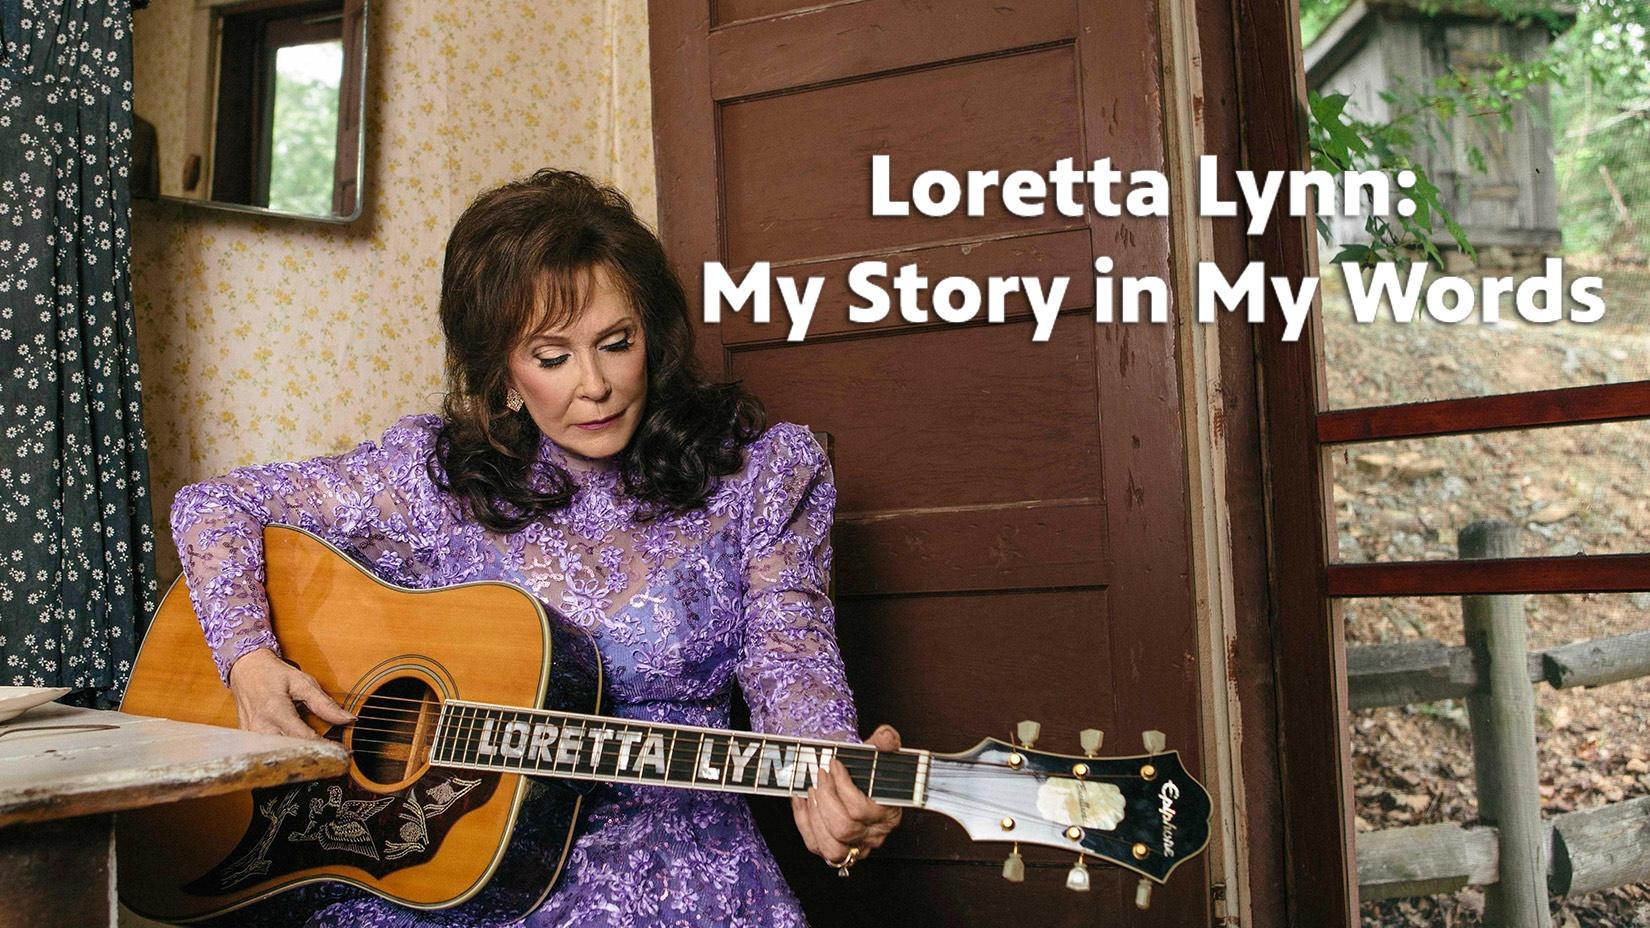 Loretta Lynn: My Story in My Words